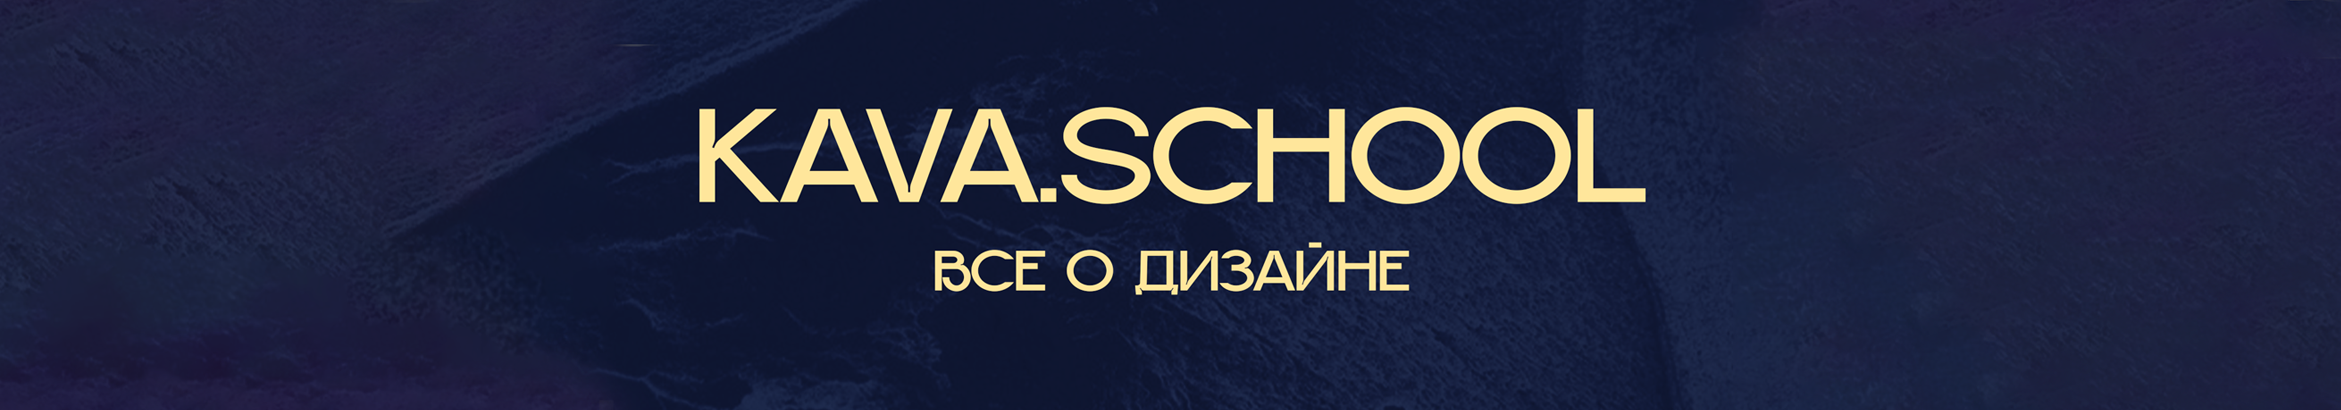 Banner de perfil de Kava School